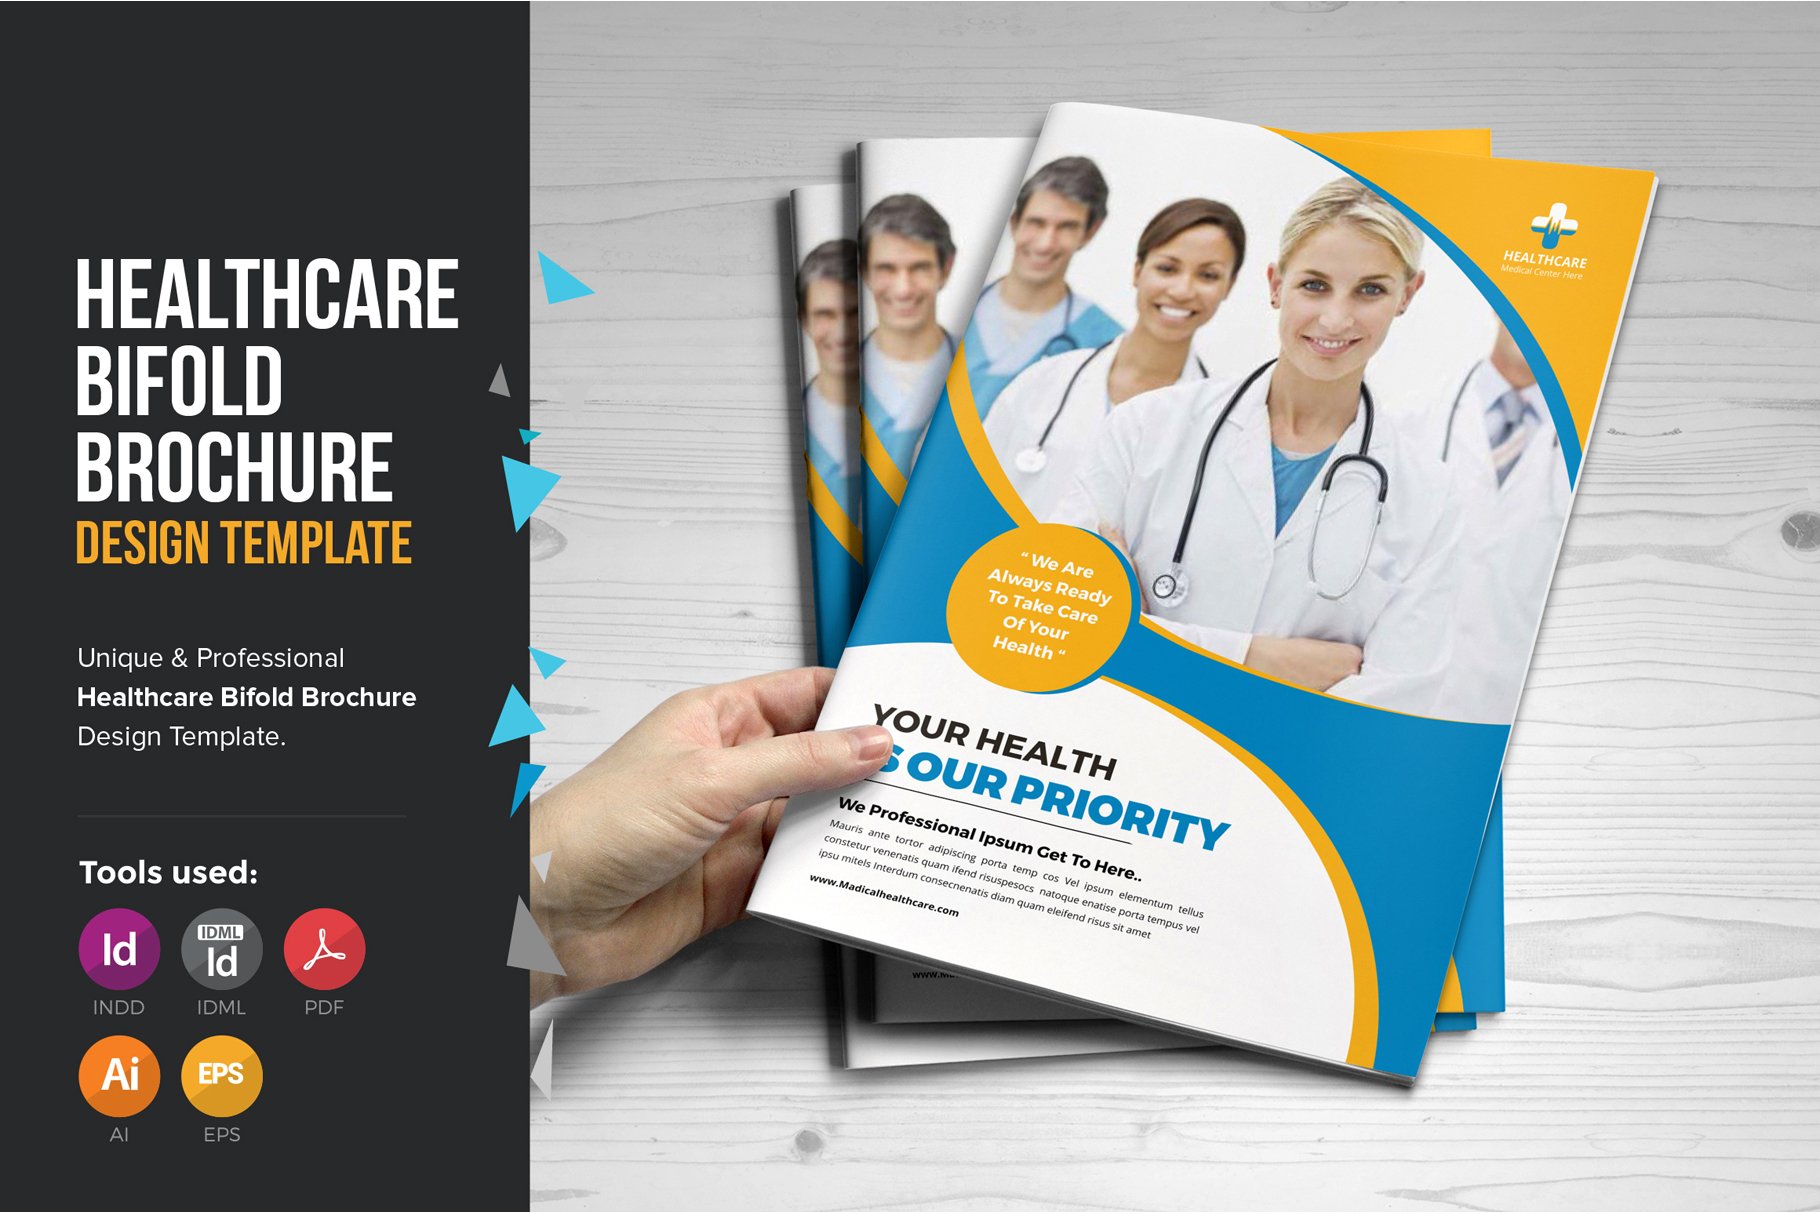 Medical Healthcare Brochure V2 cover image.